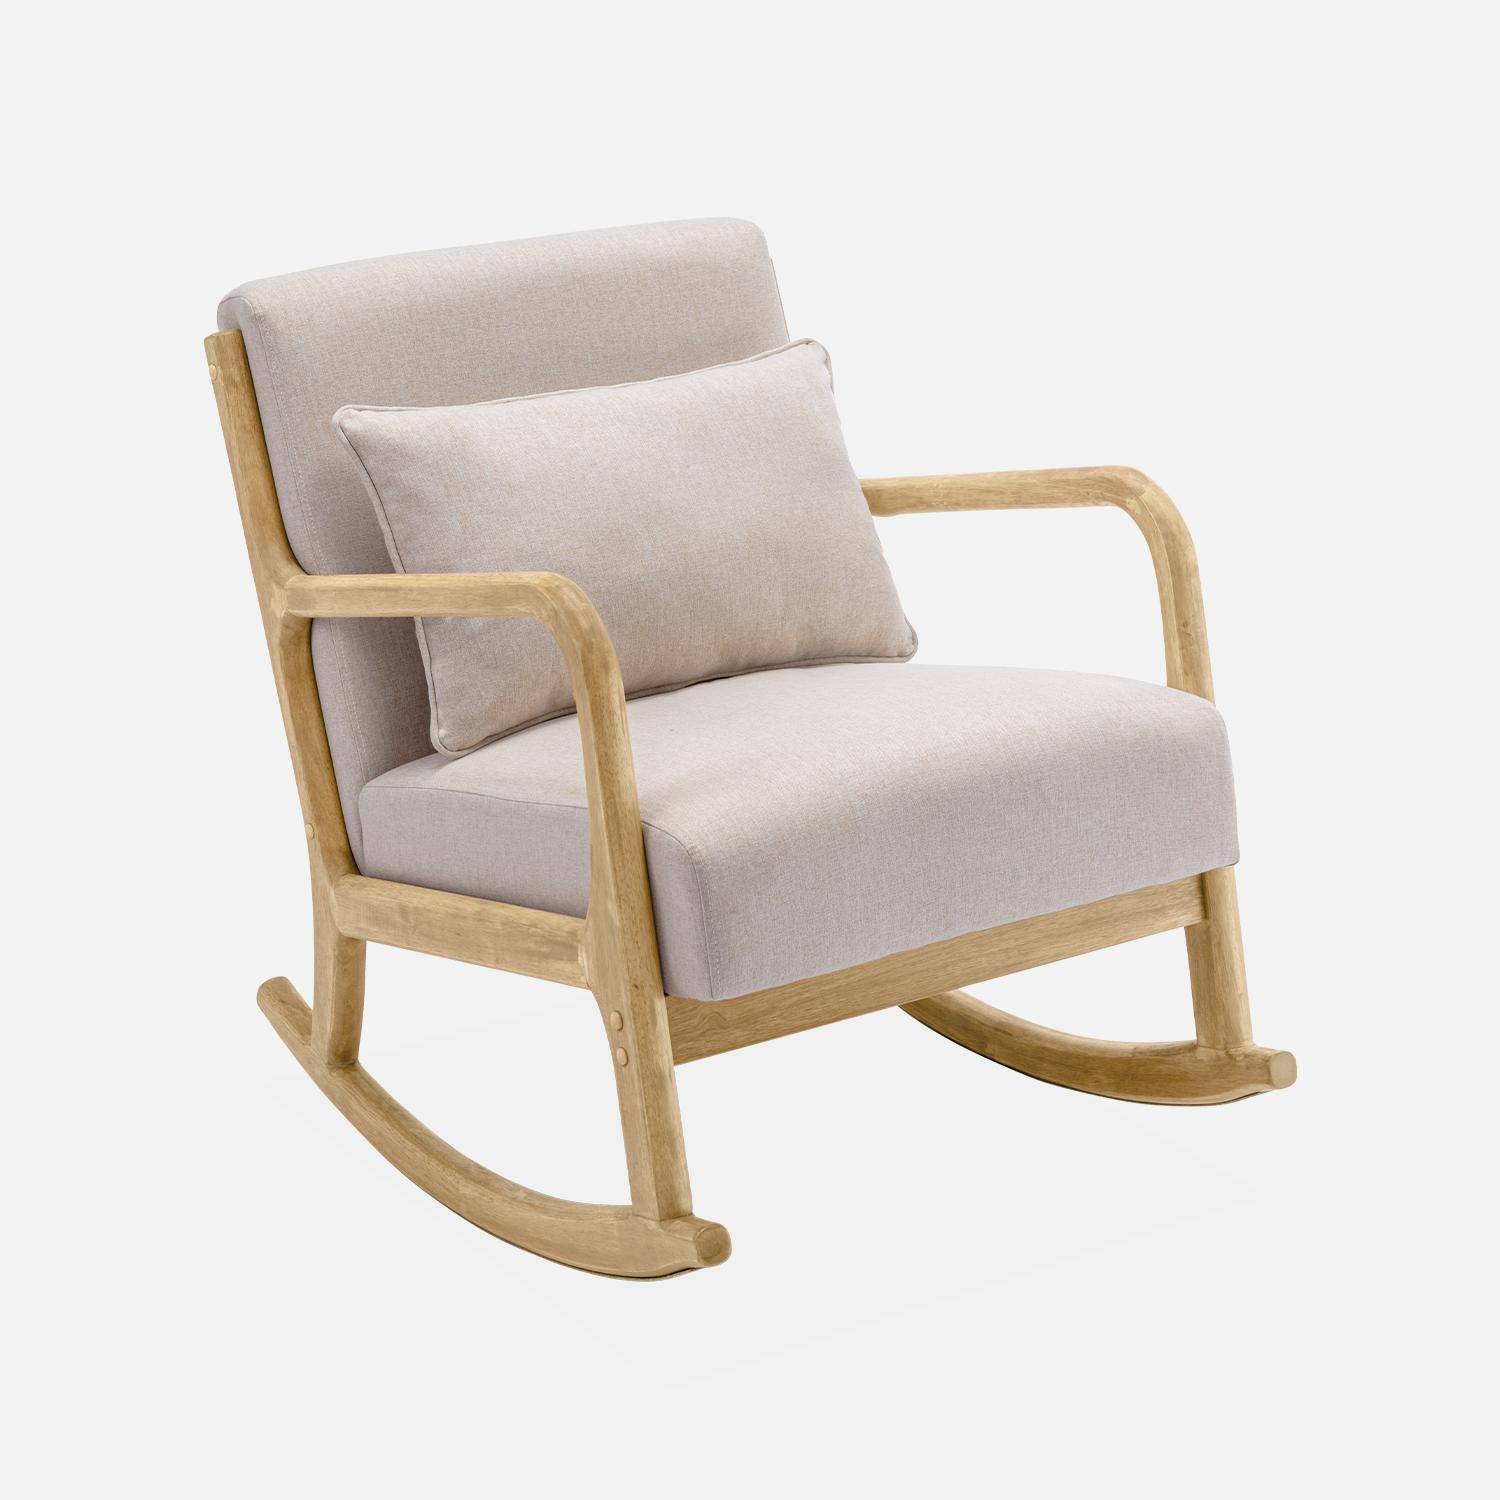 Cadeira de baloiço de design em madeira e tecido, 1 lugar, cadeira de baloiço escandinava, bege Photo3